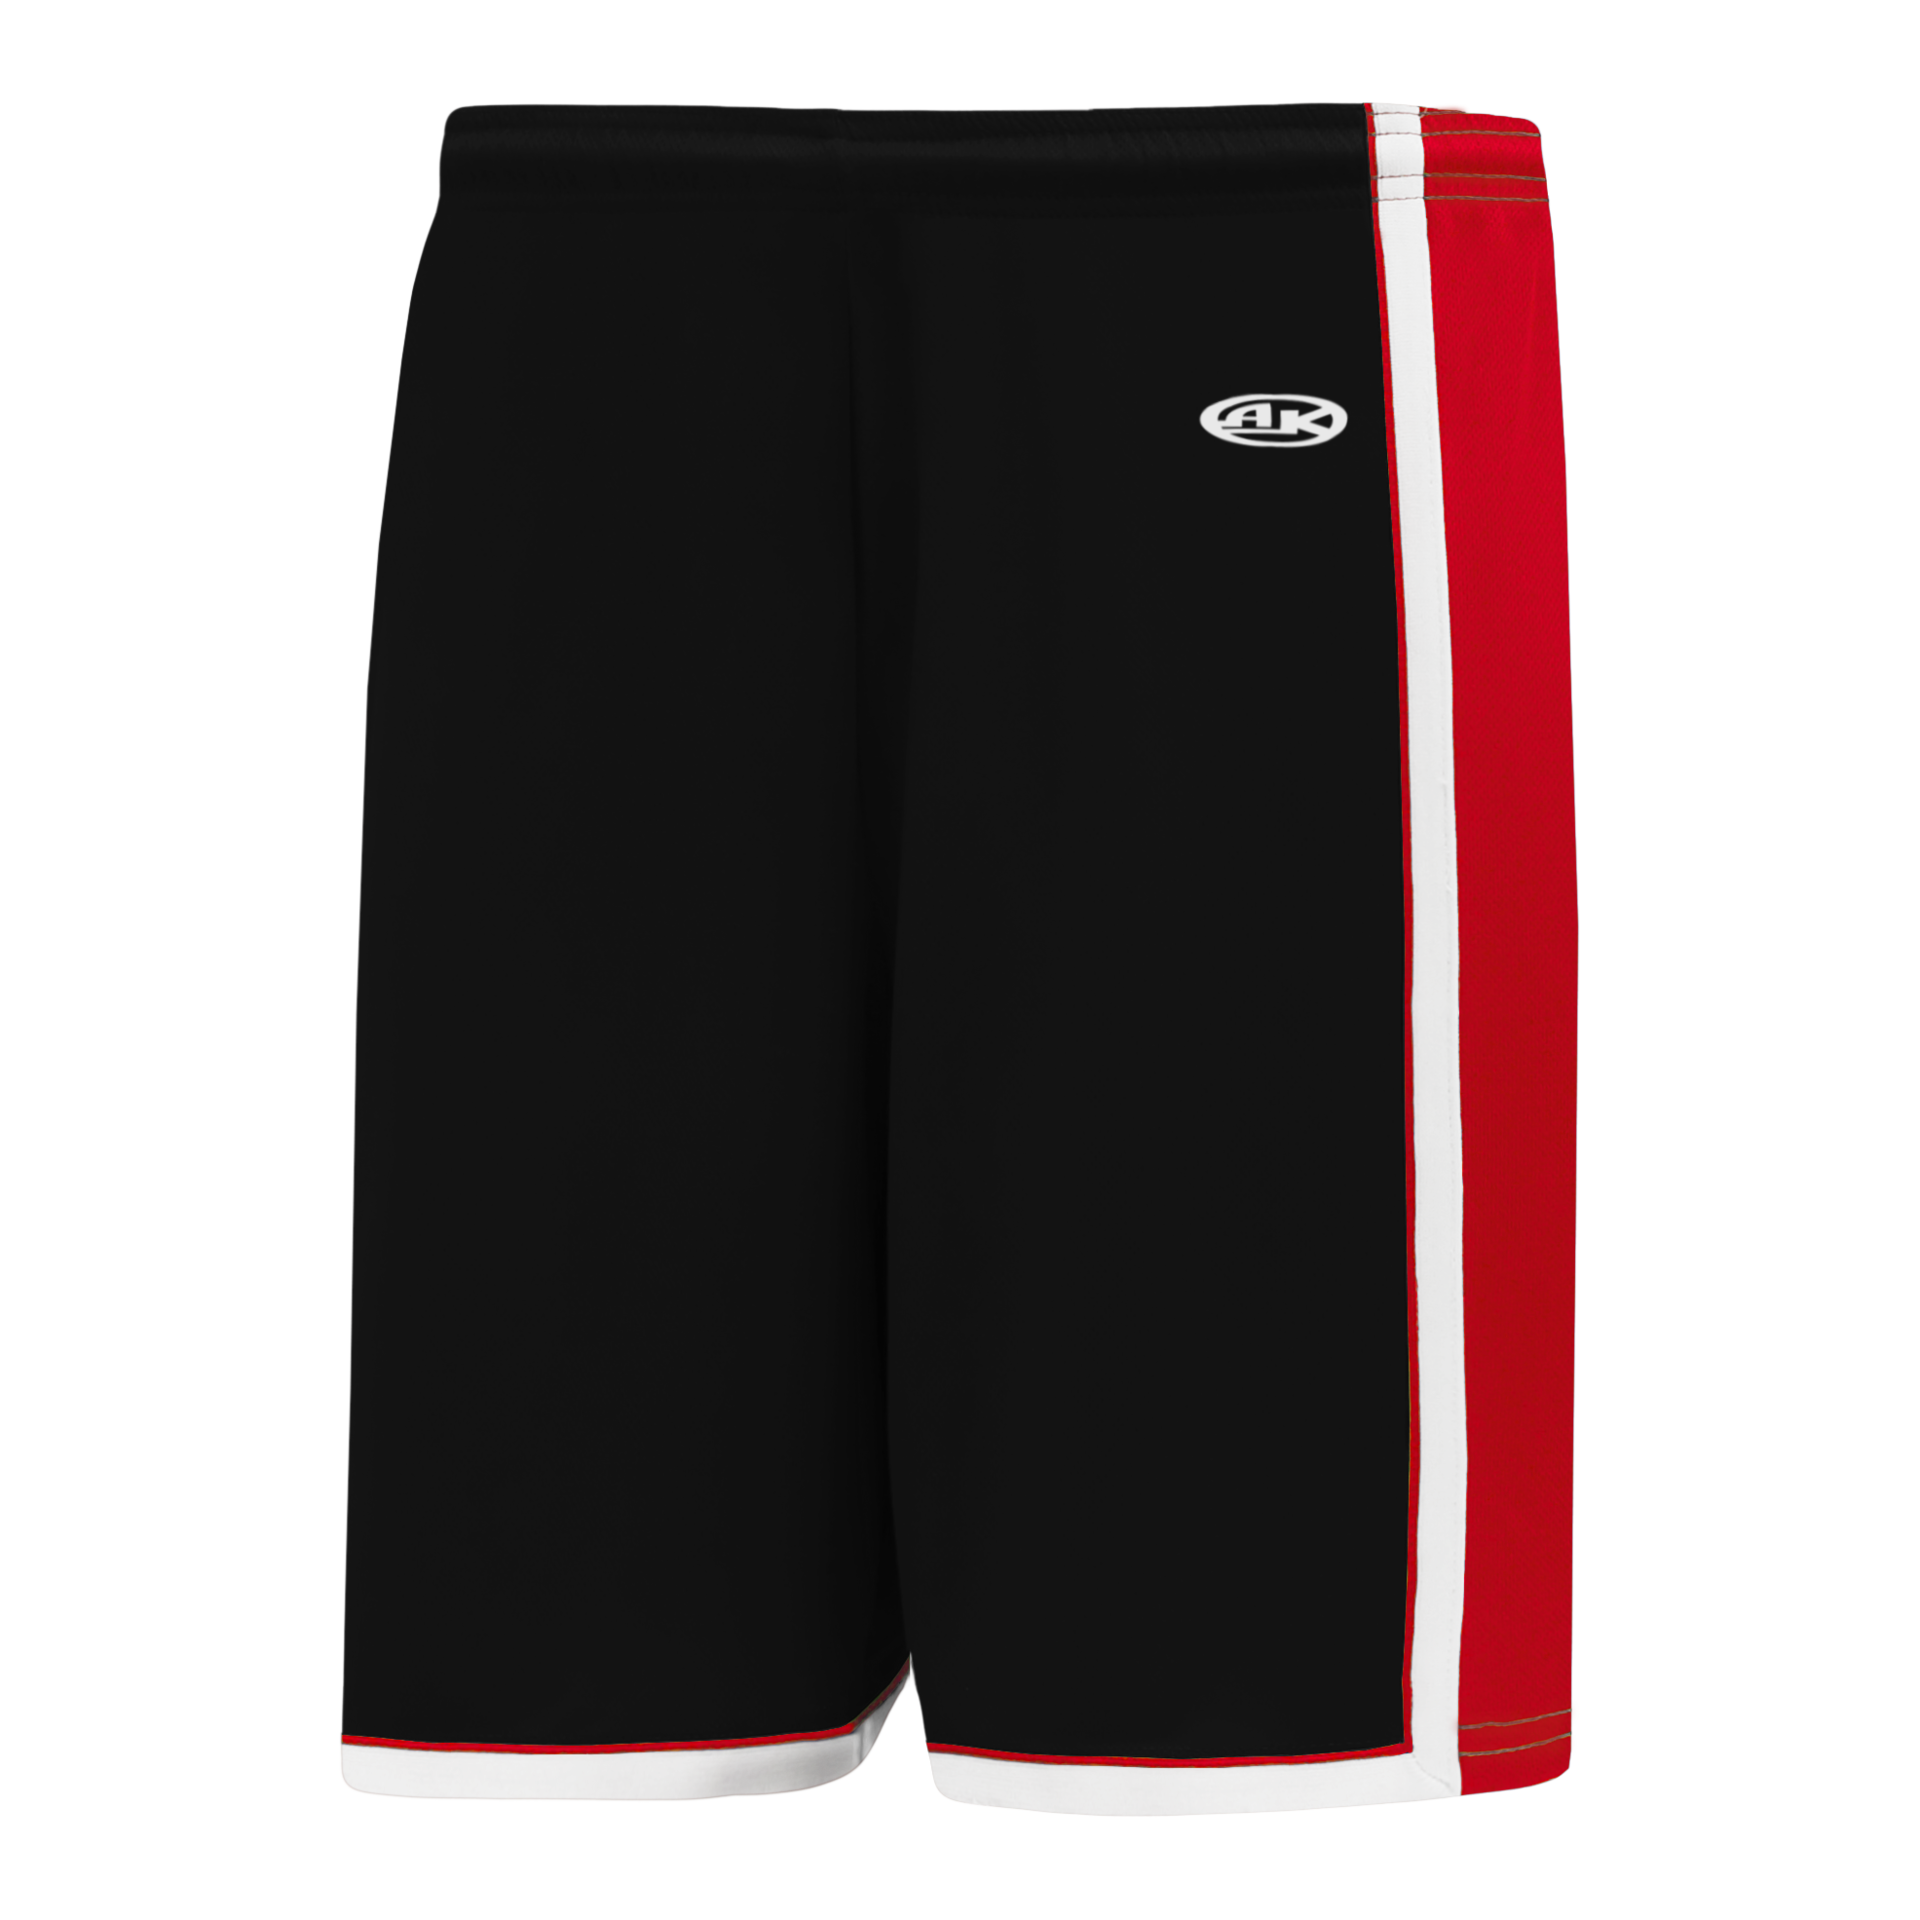 Chicago Bulls Shorts, Bulls Basketball Shorts, Running Shorts